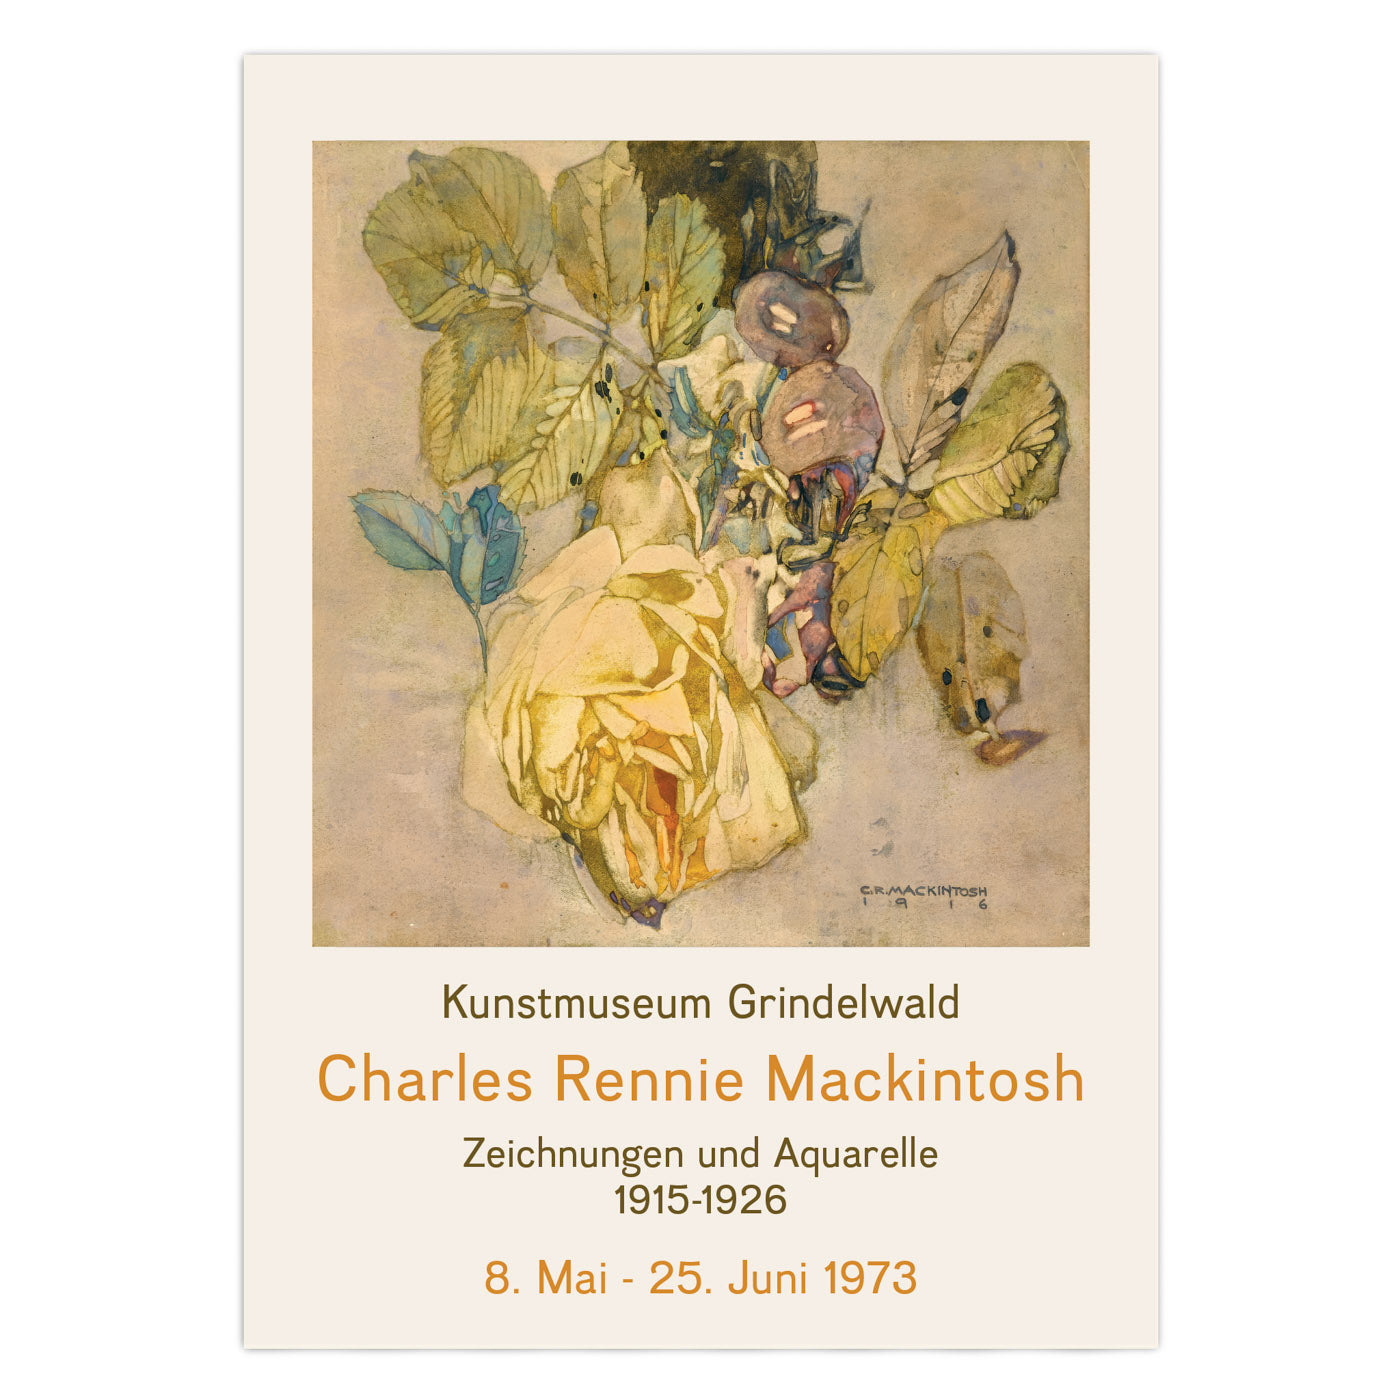 Charles Rennie Mackintosh Exhibition Poster - Winter Rose, 1916